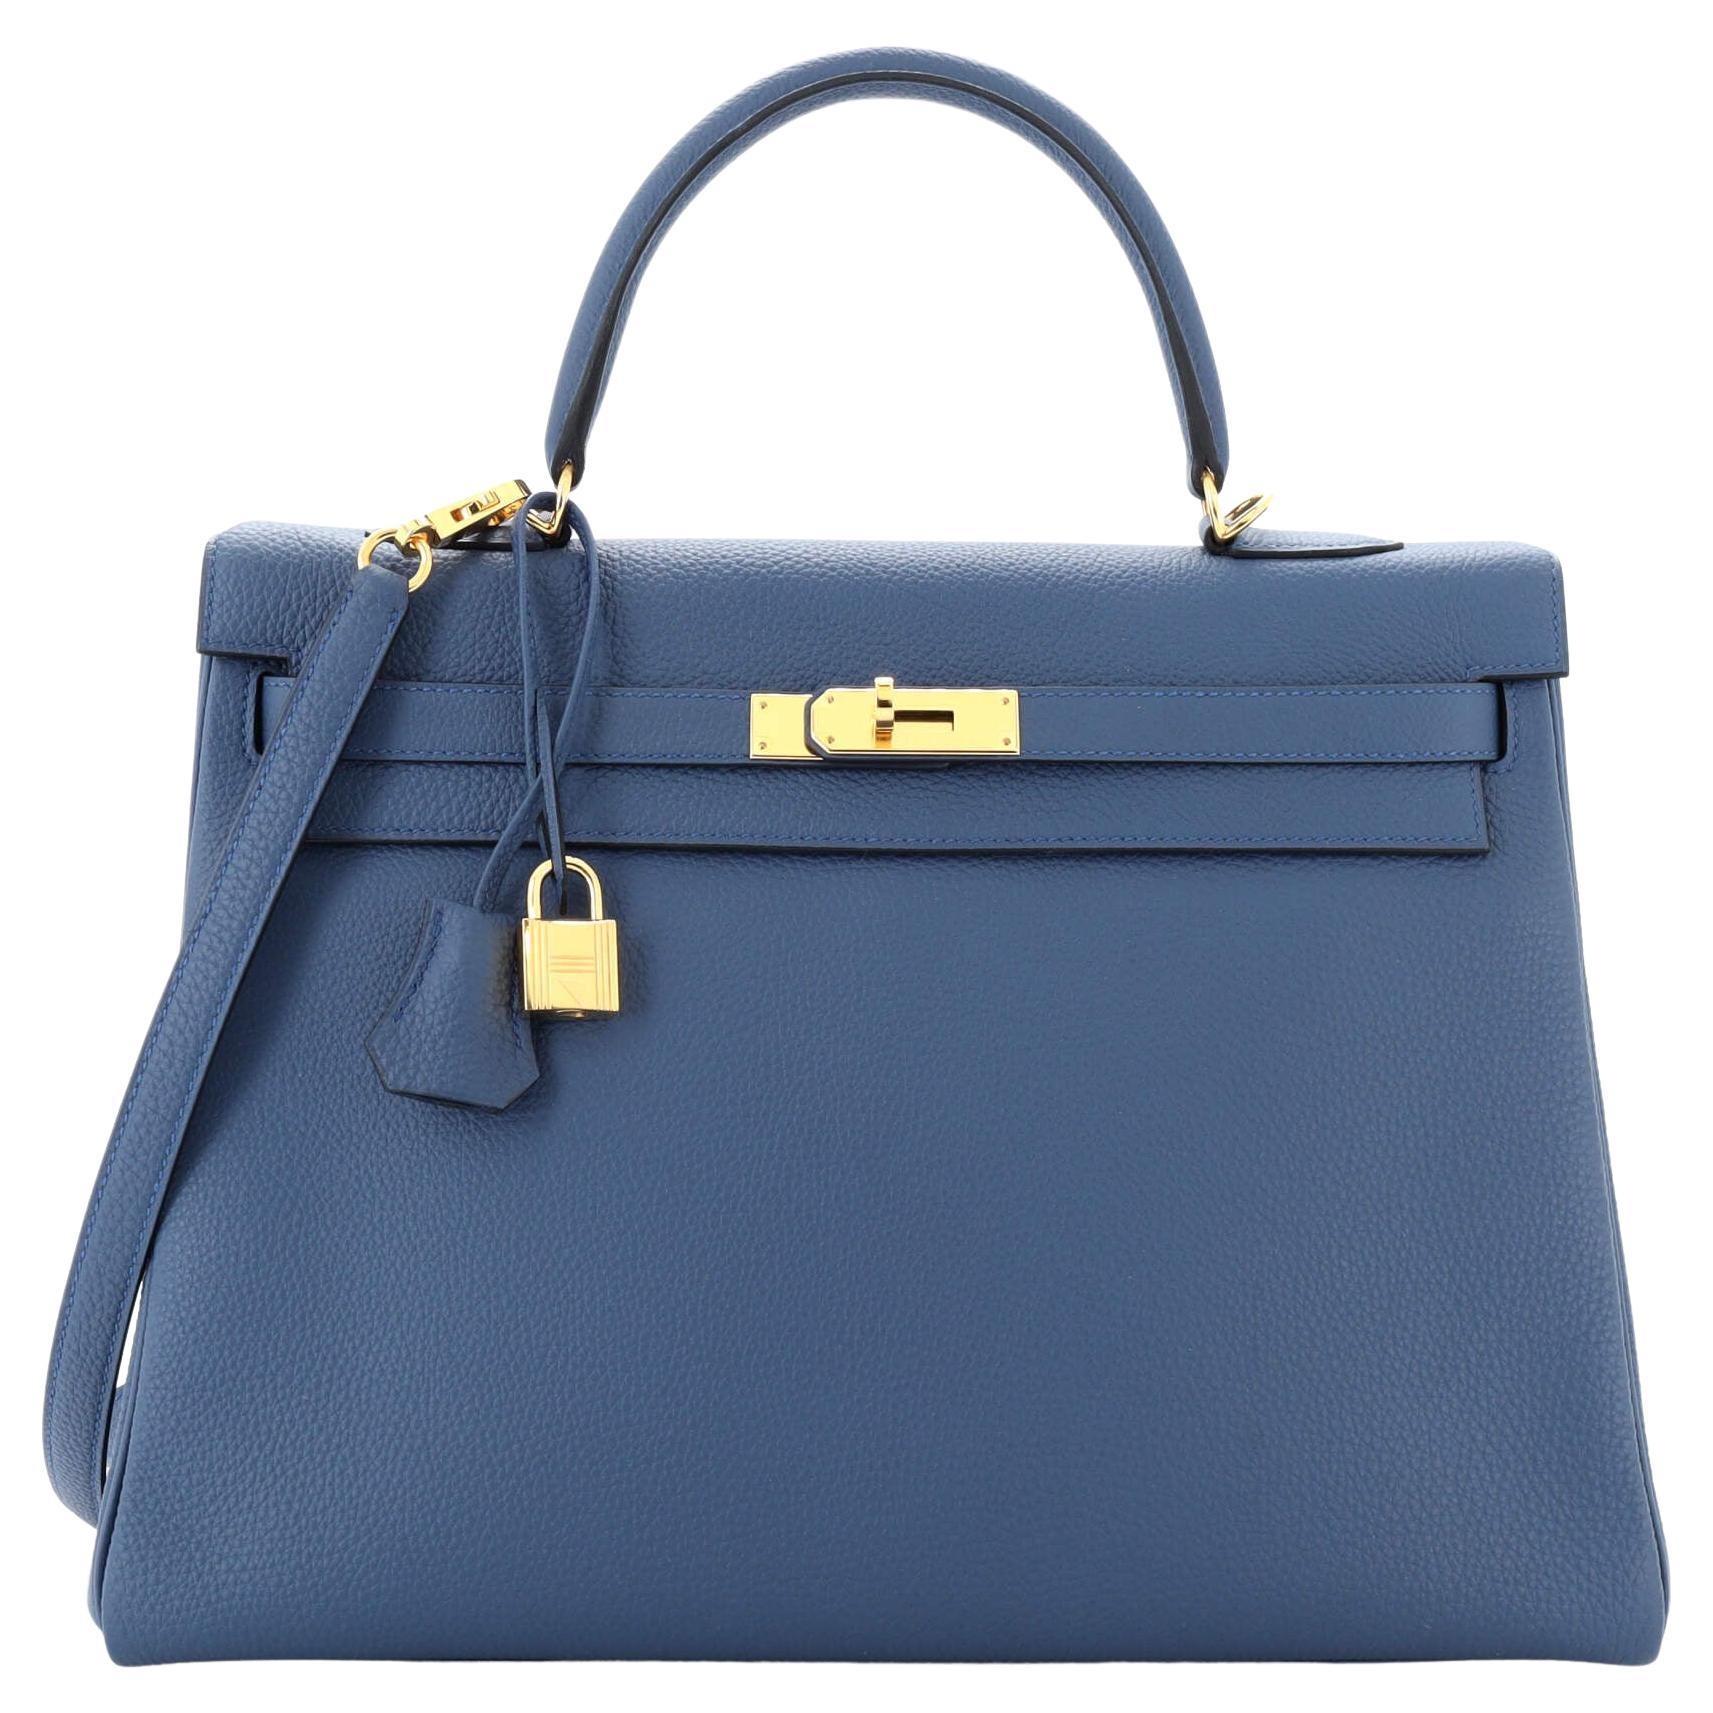 Hermes Kelly Handbag Bleu Agate Togo with Gold Hardware 35